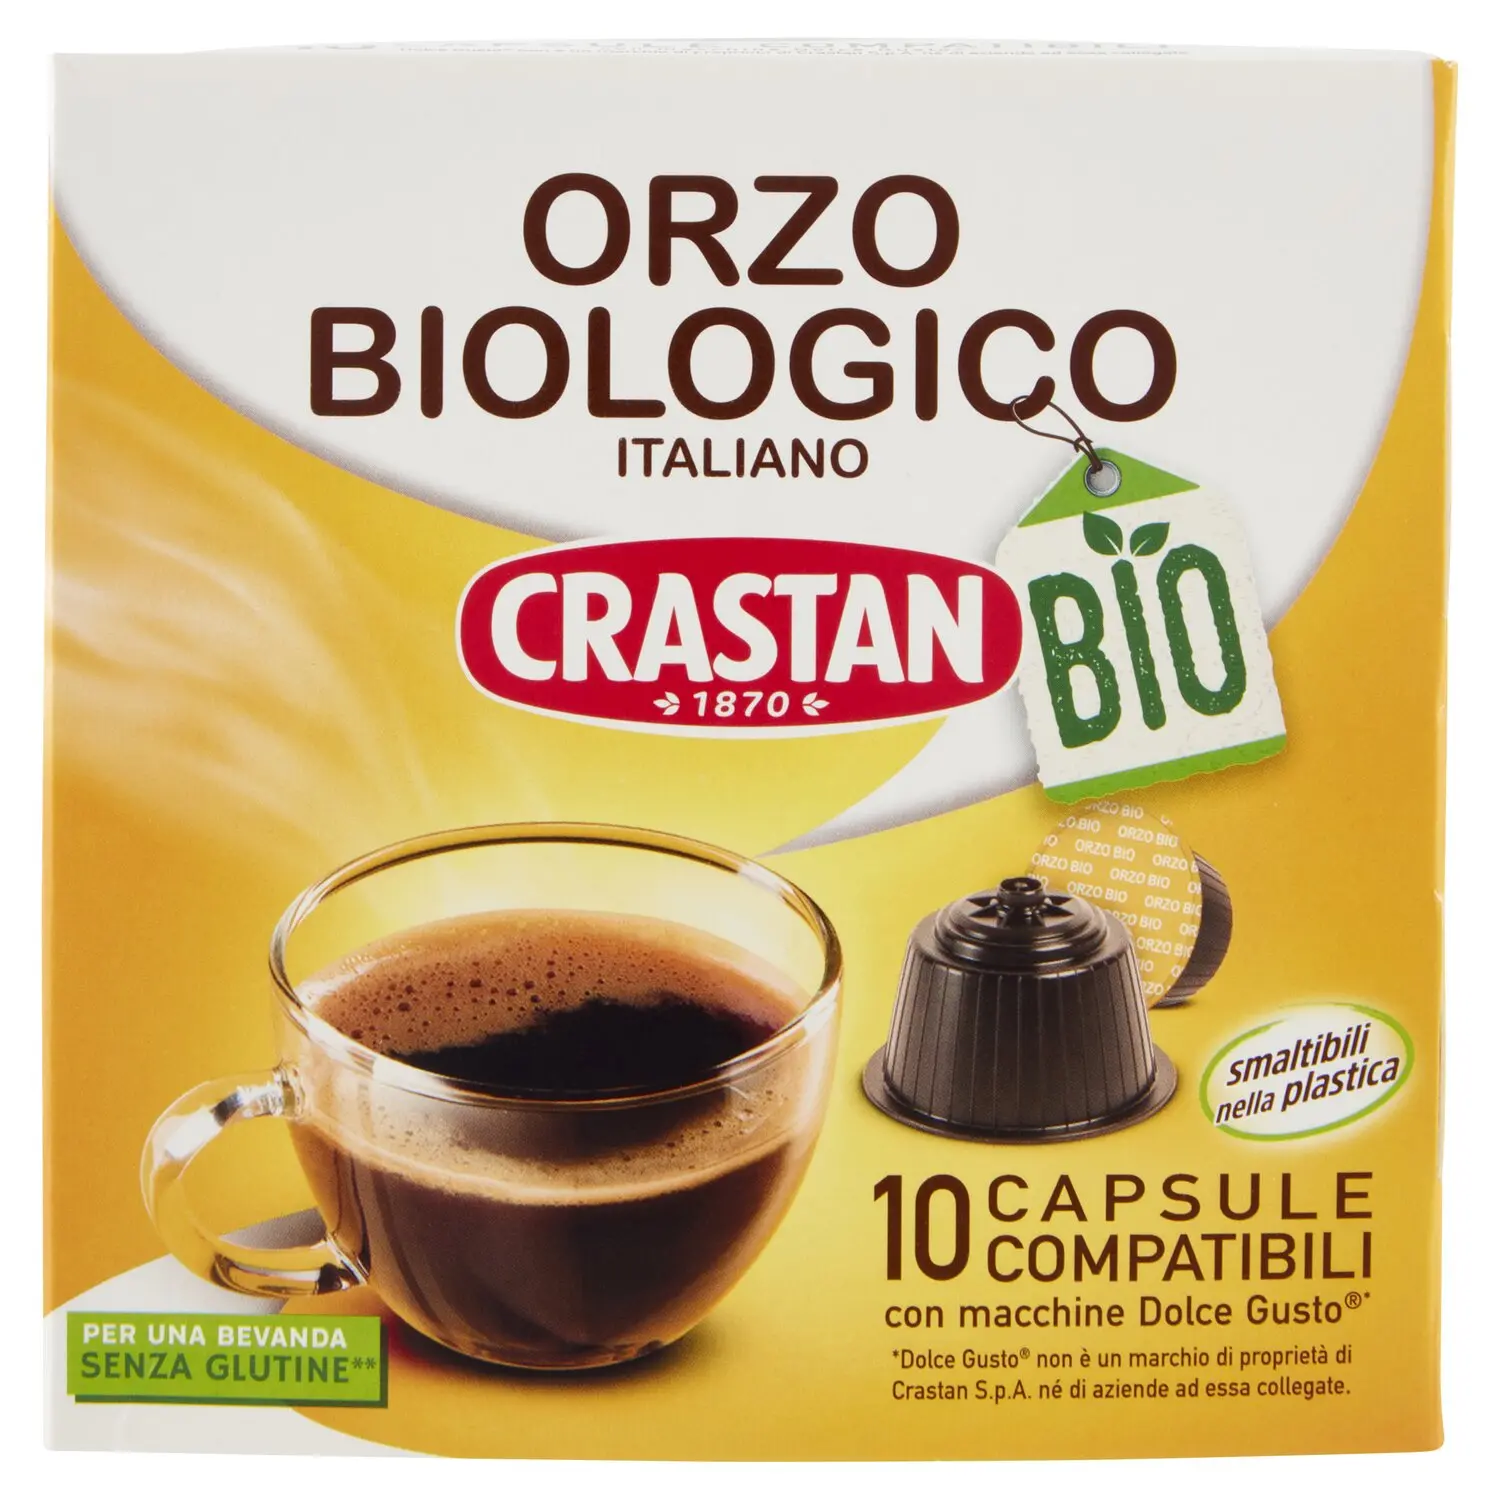 Crastan Orzo Biologico Italiano Capsule Compatibili con Macchine Dolce Gusto*  10 x 3,0 g